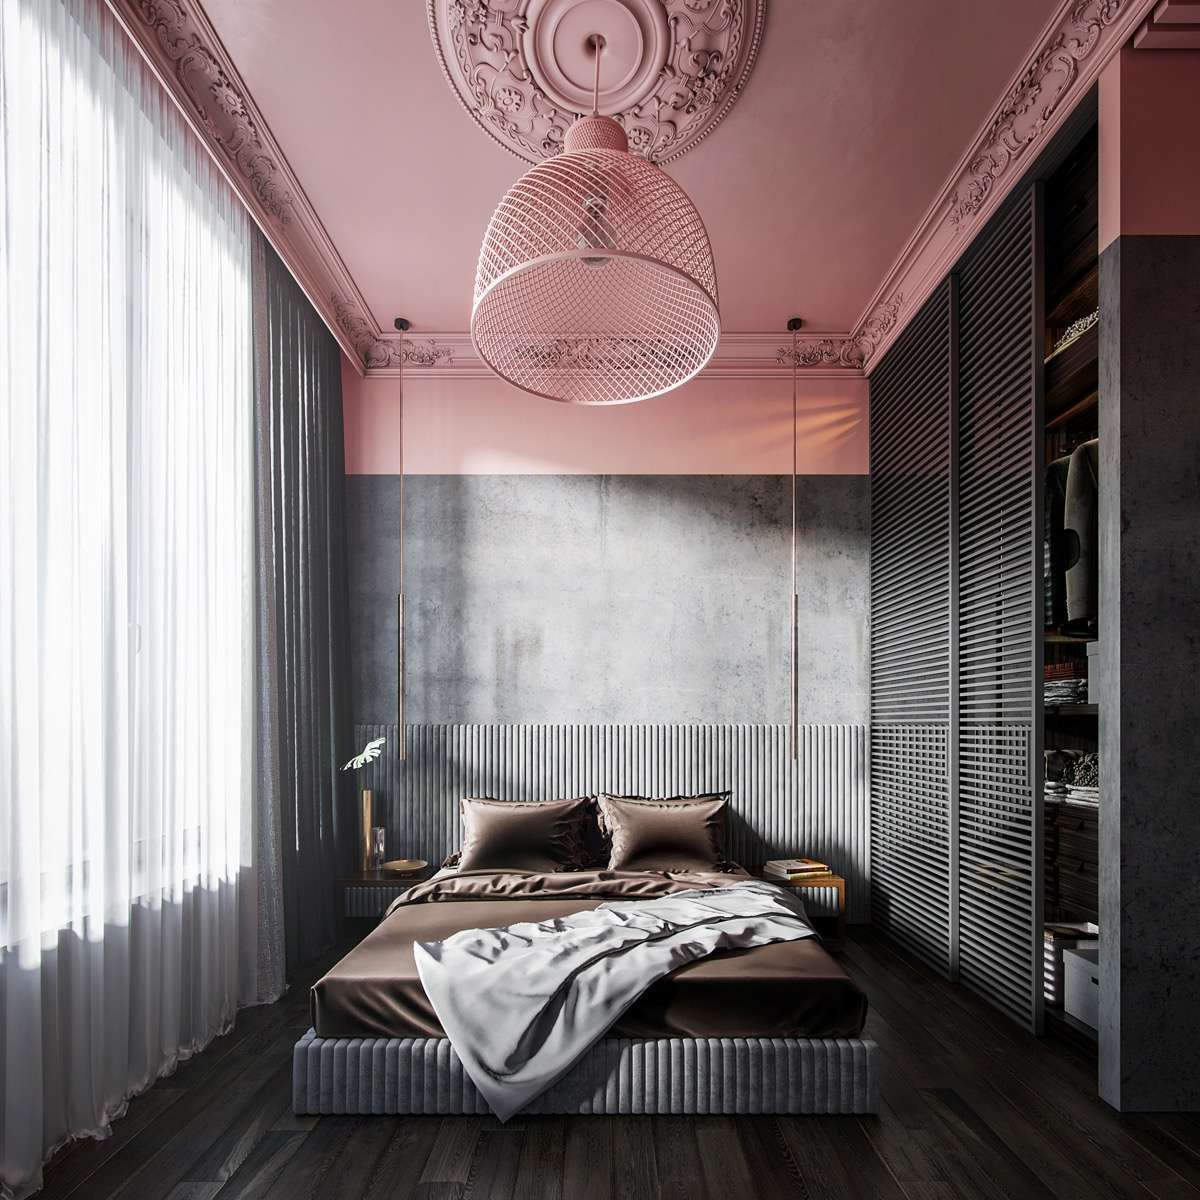 Màu hồng của trần trang trí kết hợp giường ngủ xám giúp phòng ngủ trở nên nổi bật